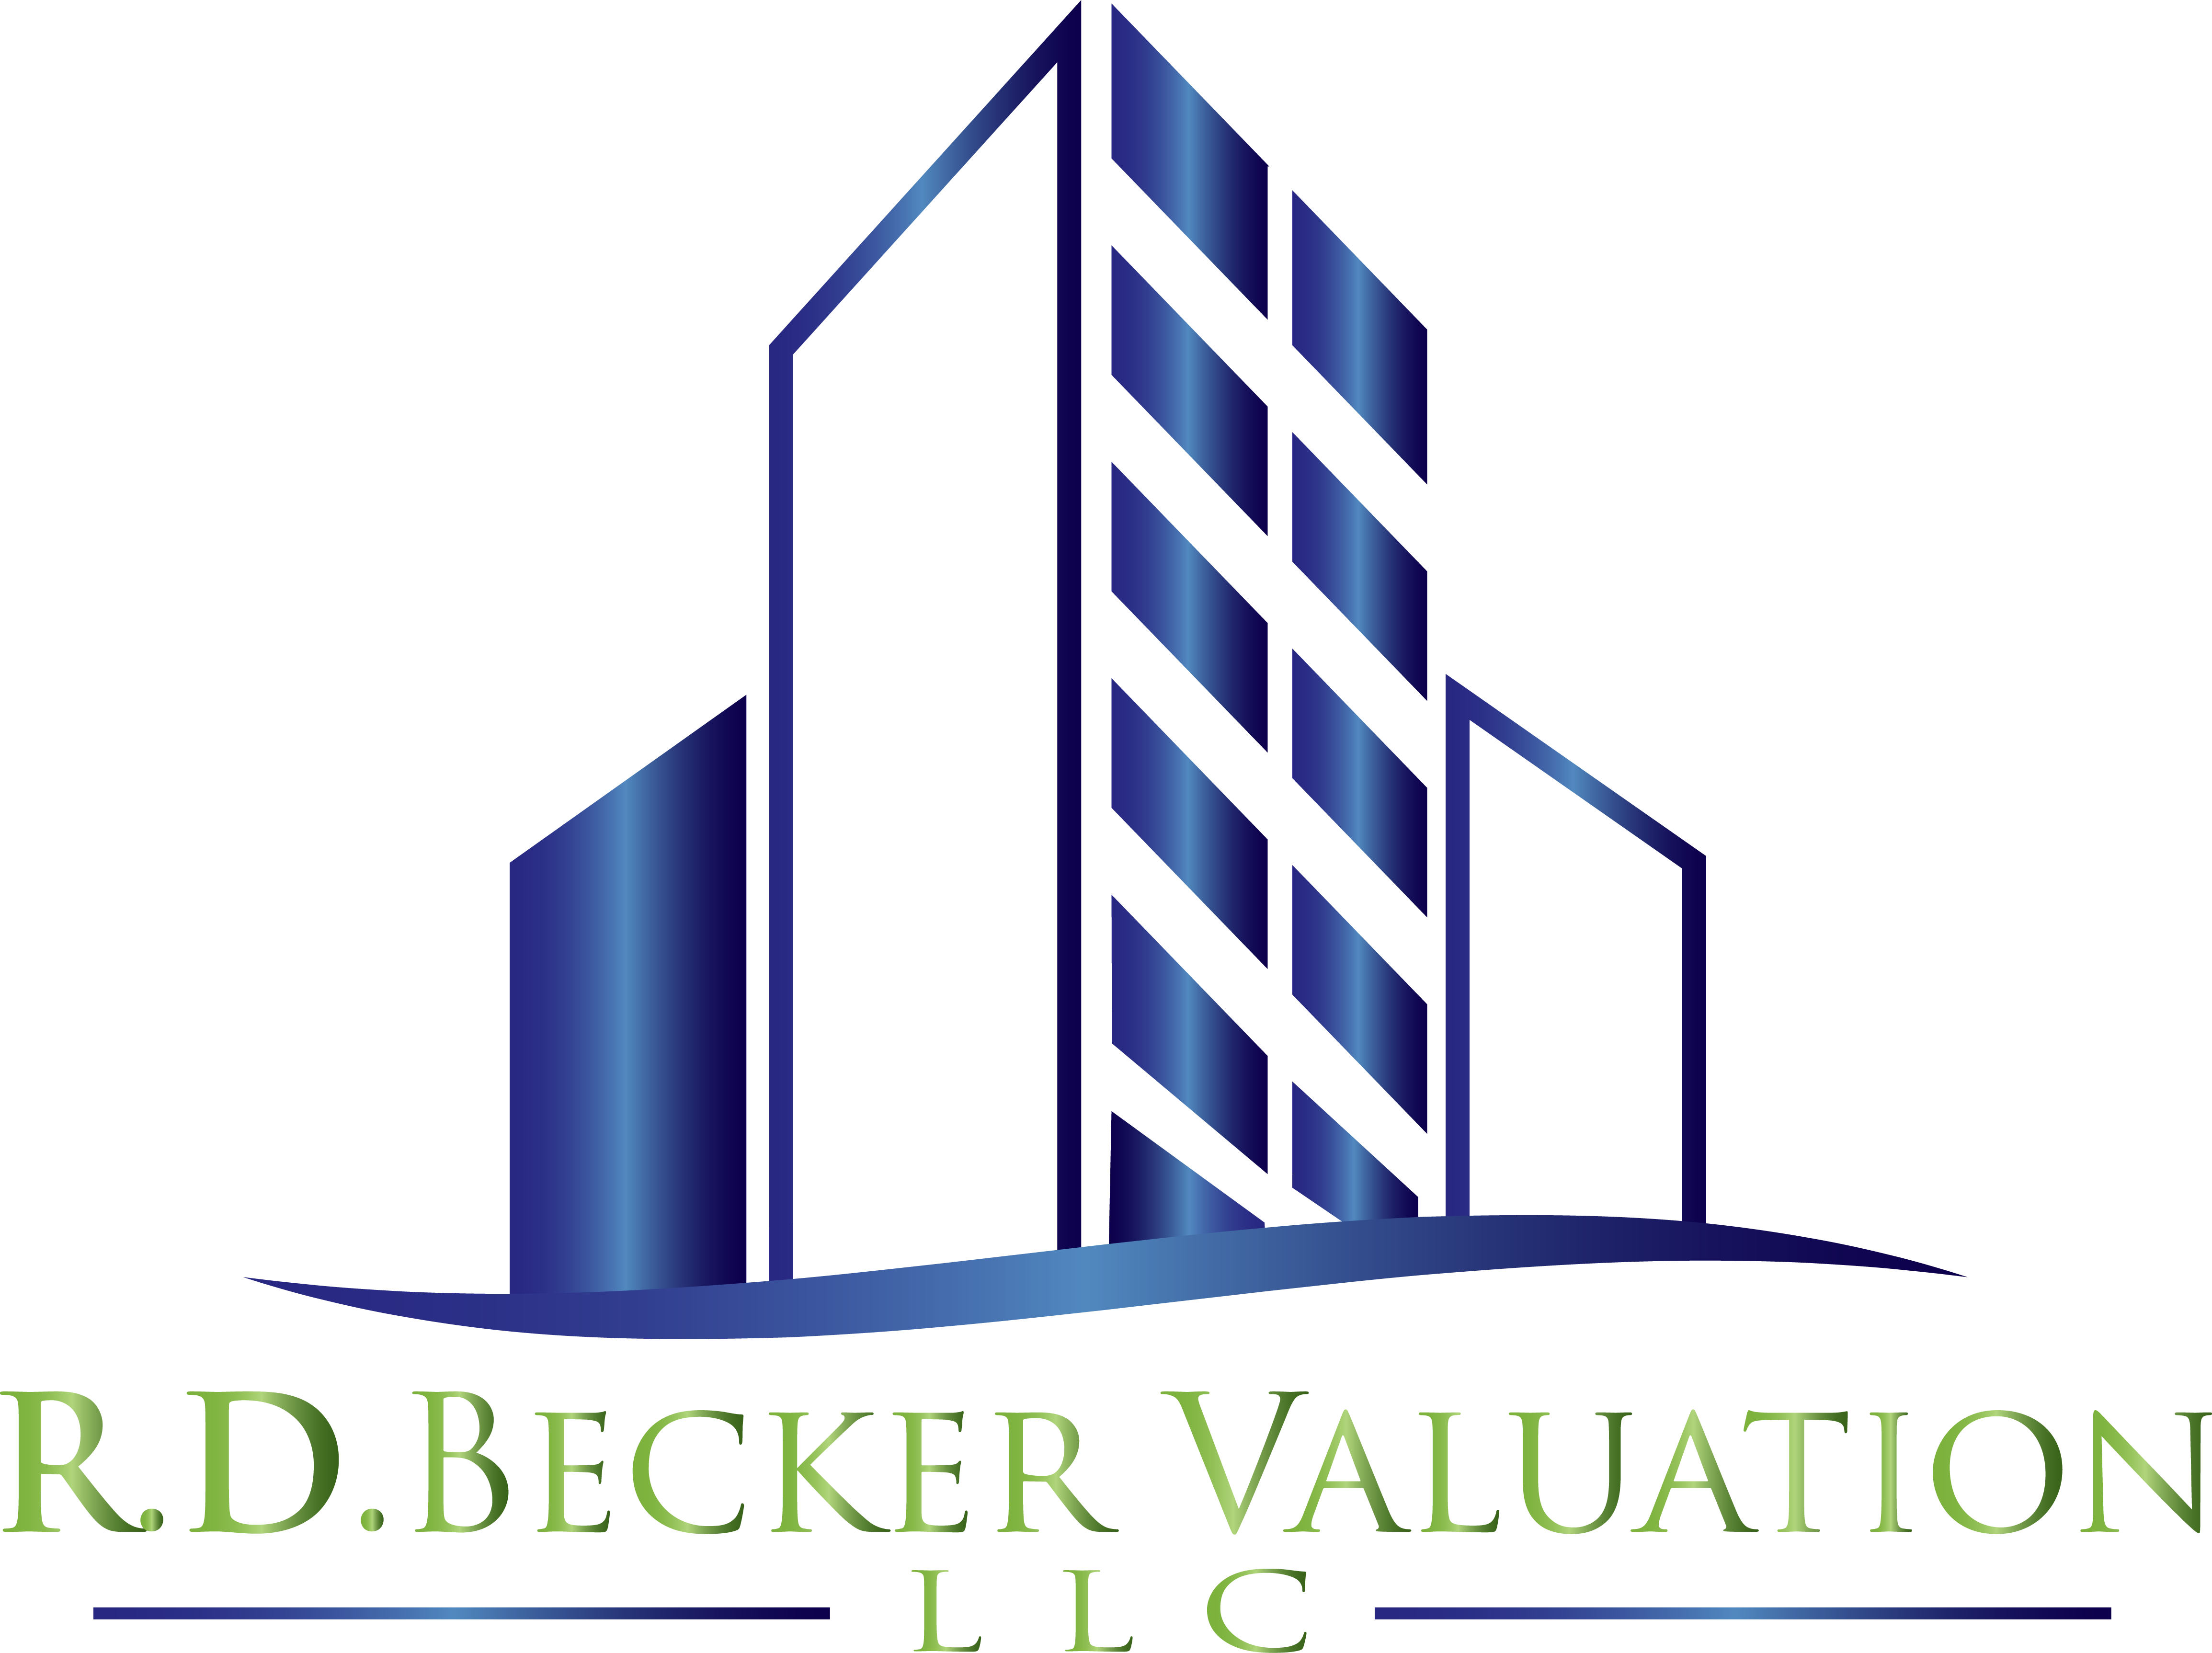 R.D. Becker Valuation LLC